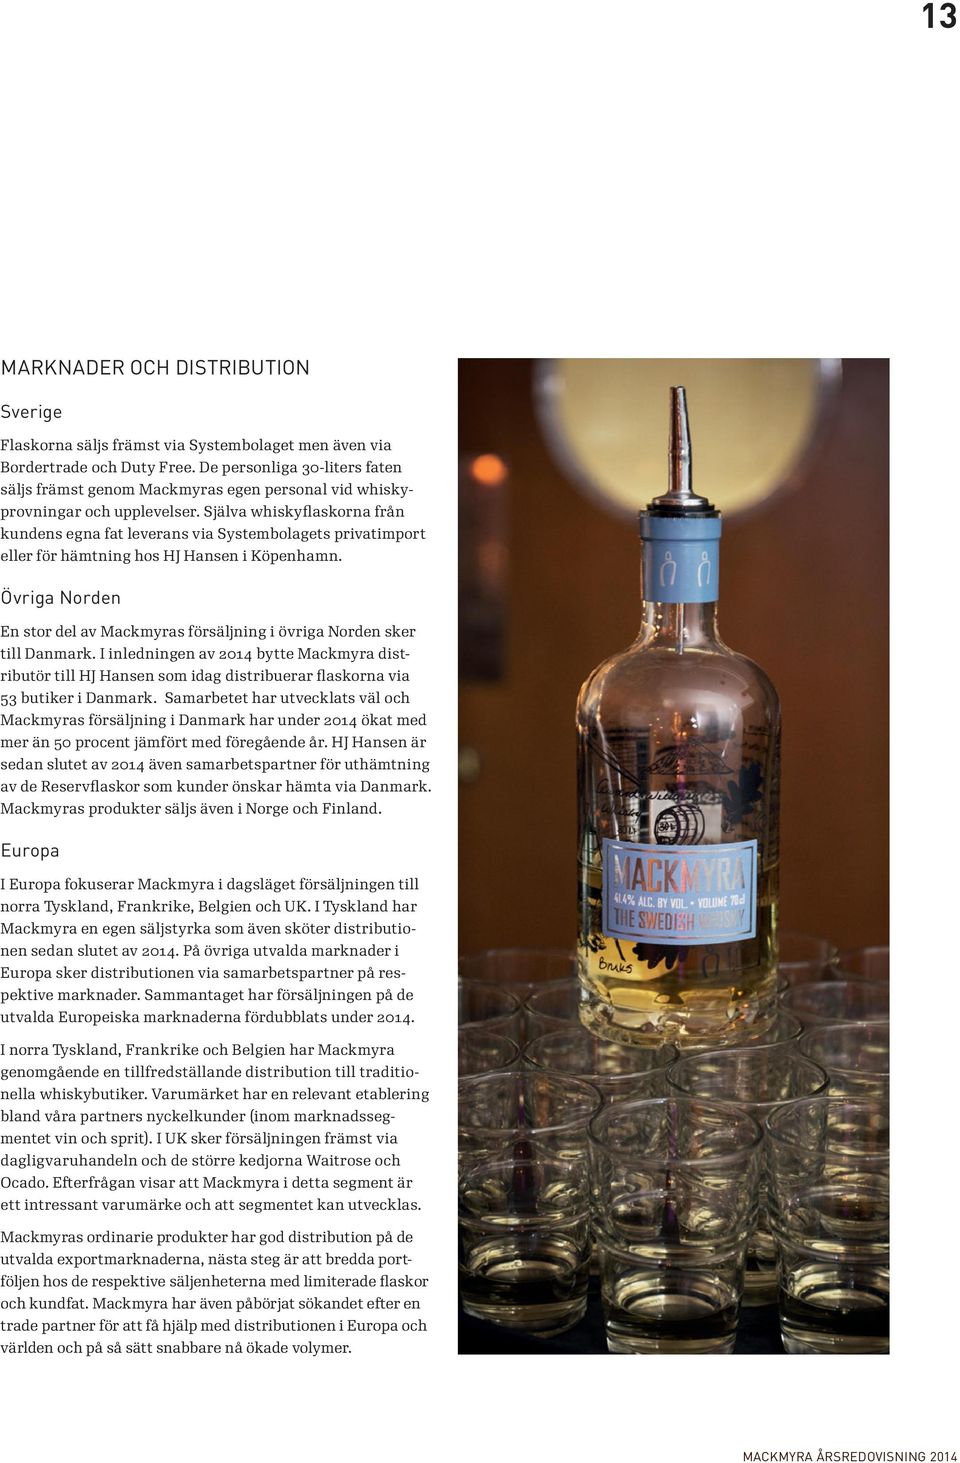 Själva whiskyflaskorna från kundens egna fat leverans via Systembolagets privatimport eller för hämtning hos HJ Hansen i Köpenhamn.